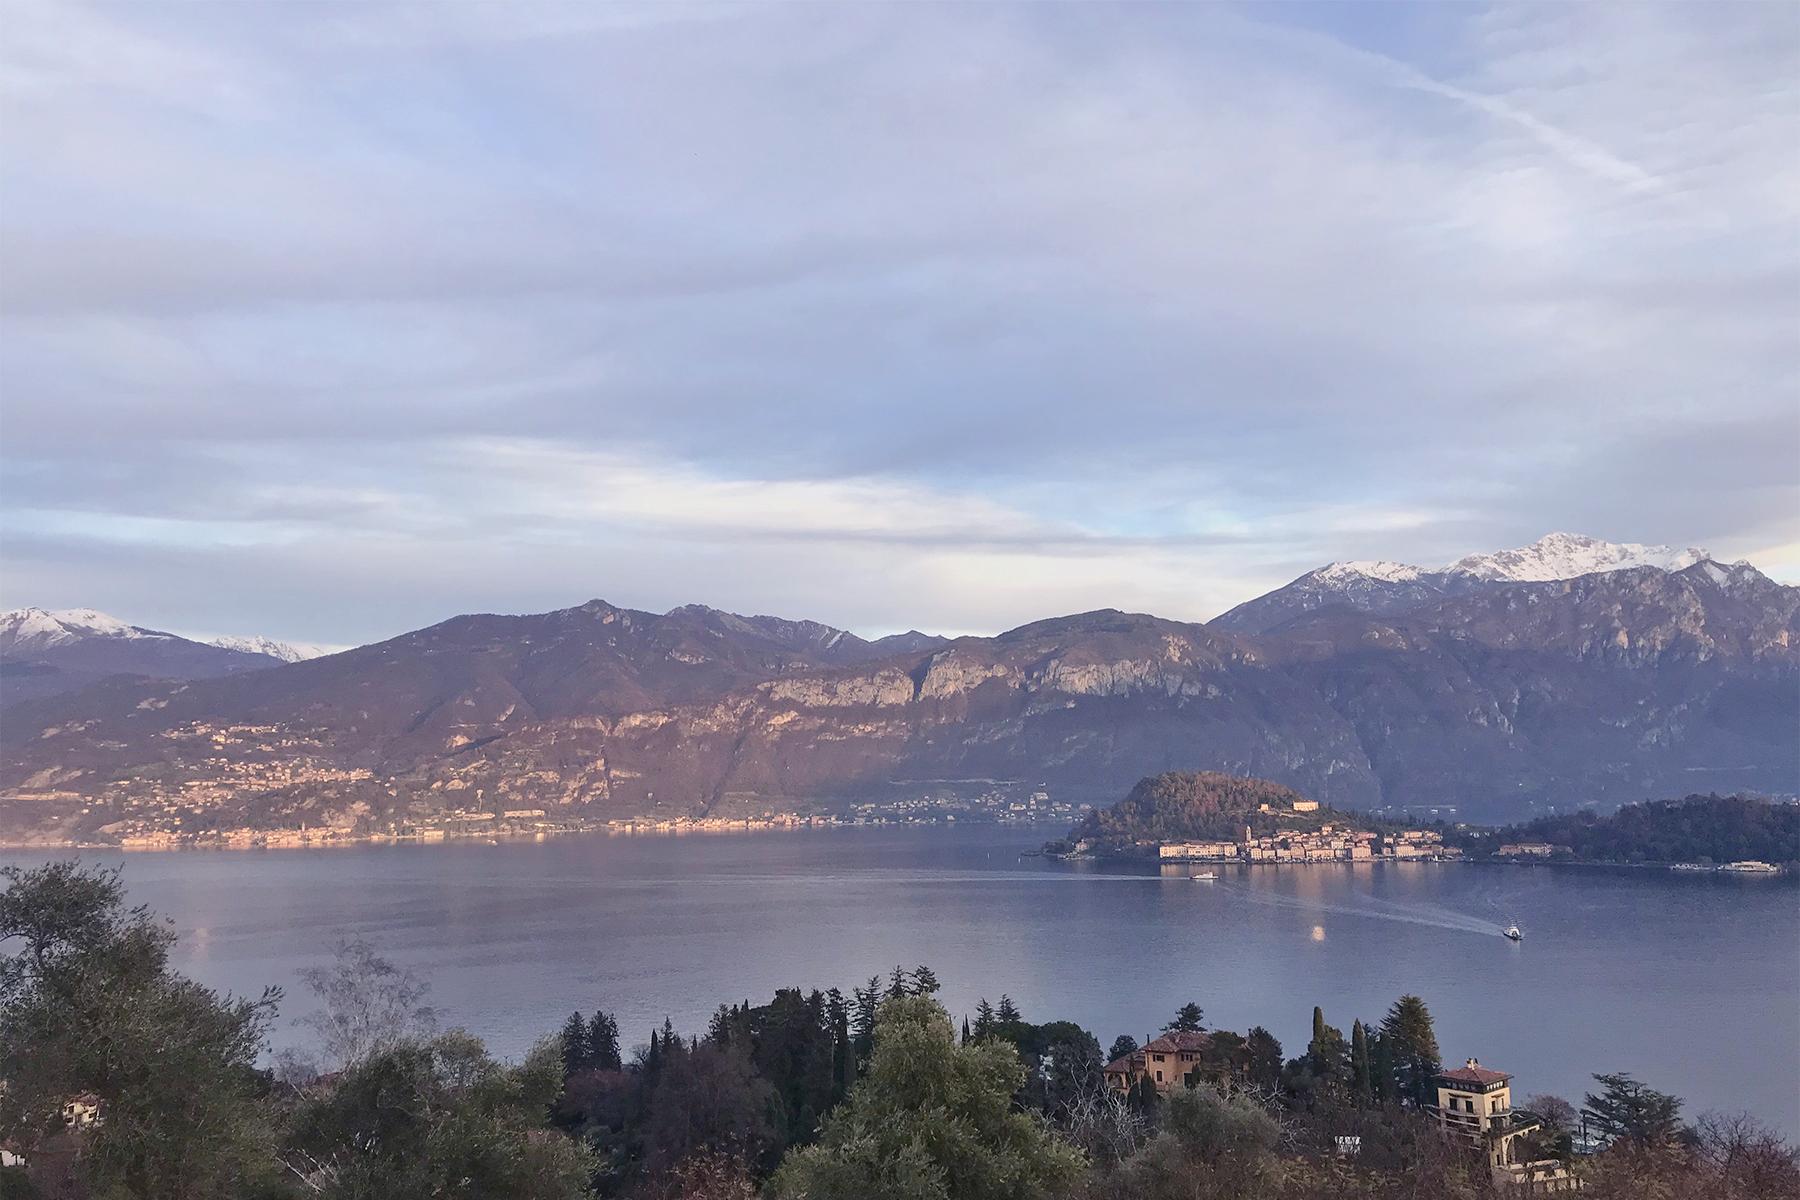 Villa in stile hollywoodiano con vista sul lago di Como da una posizione panoramica e dominante - 11